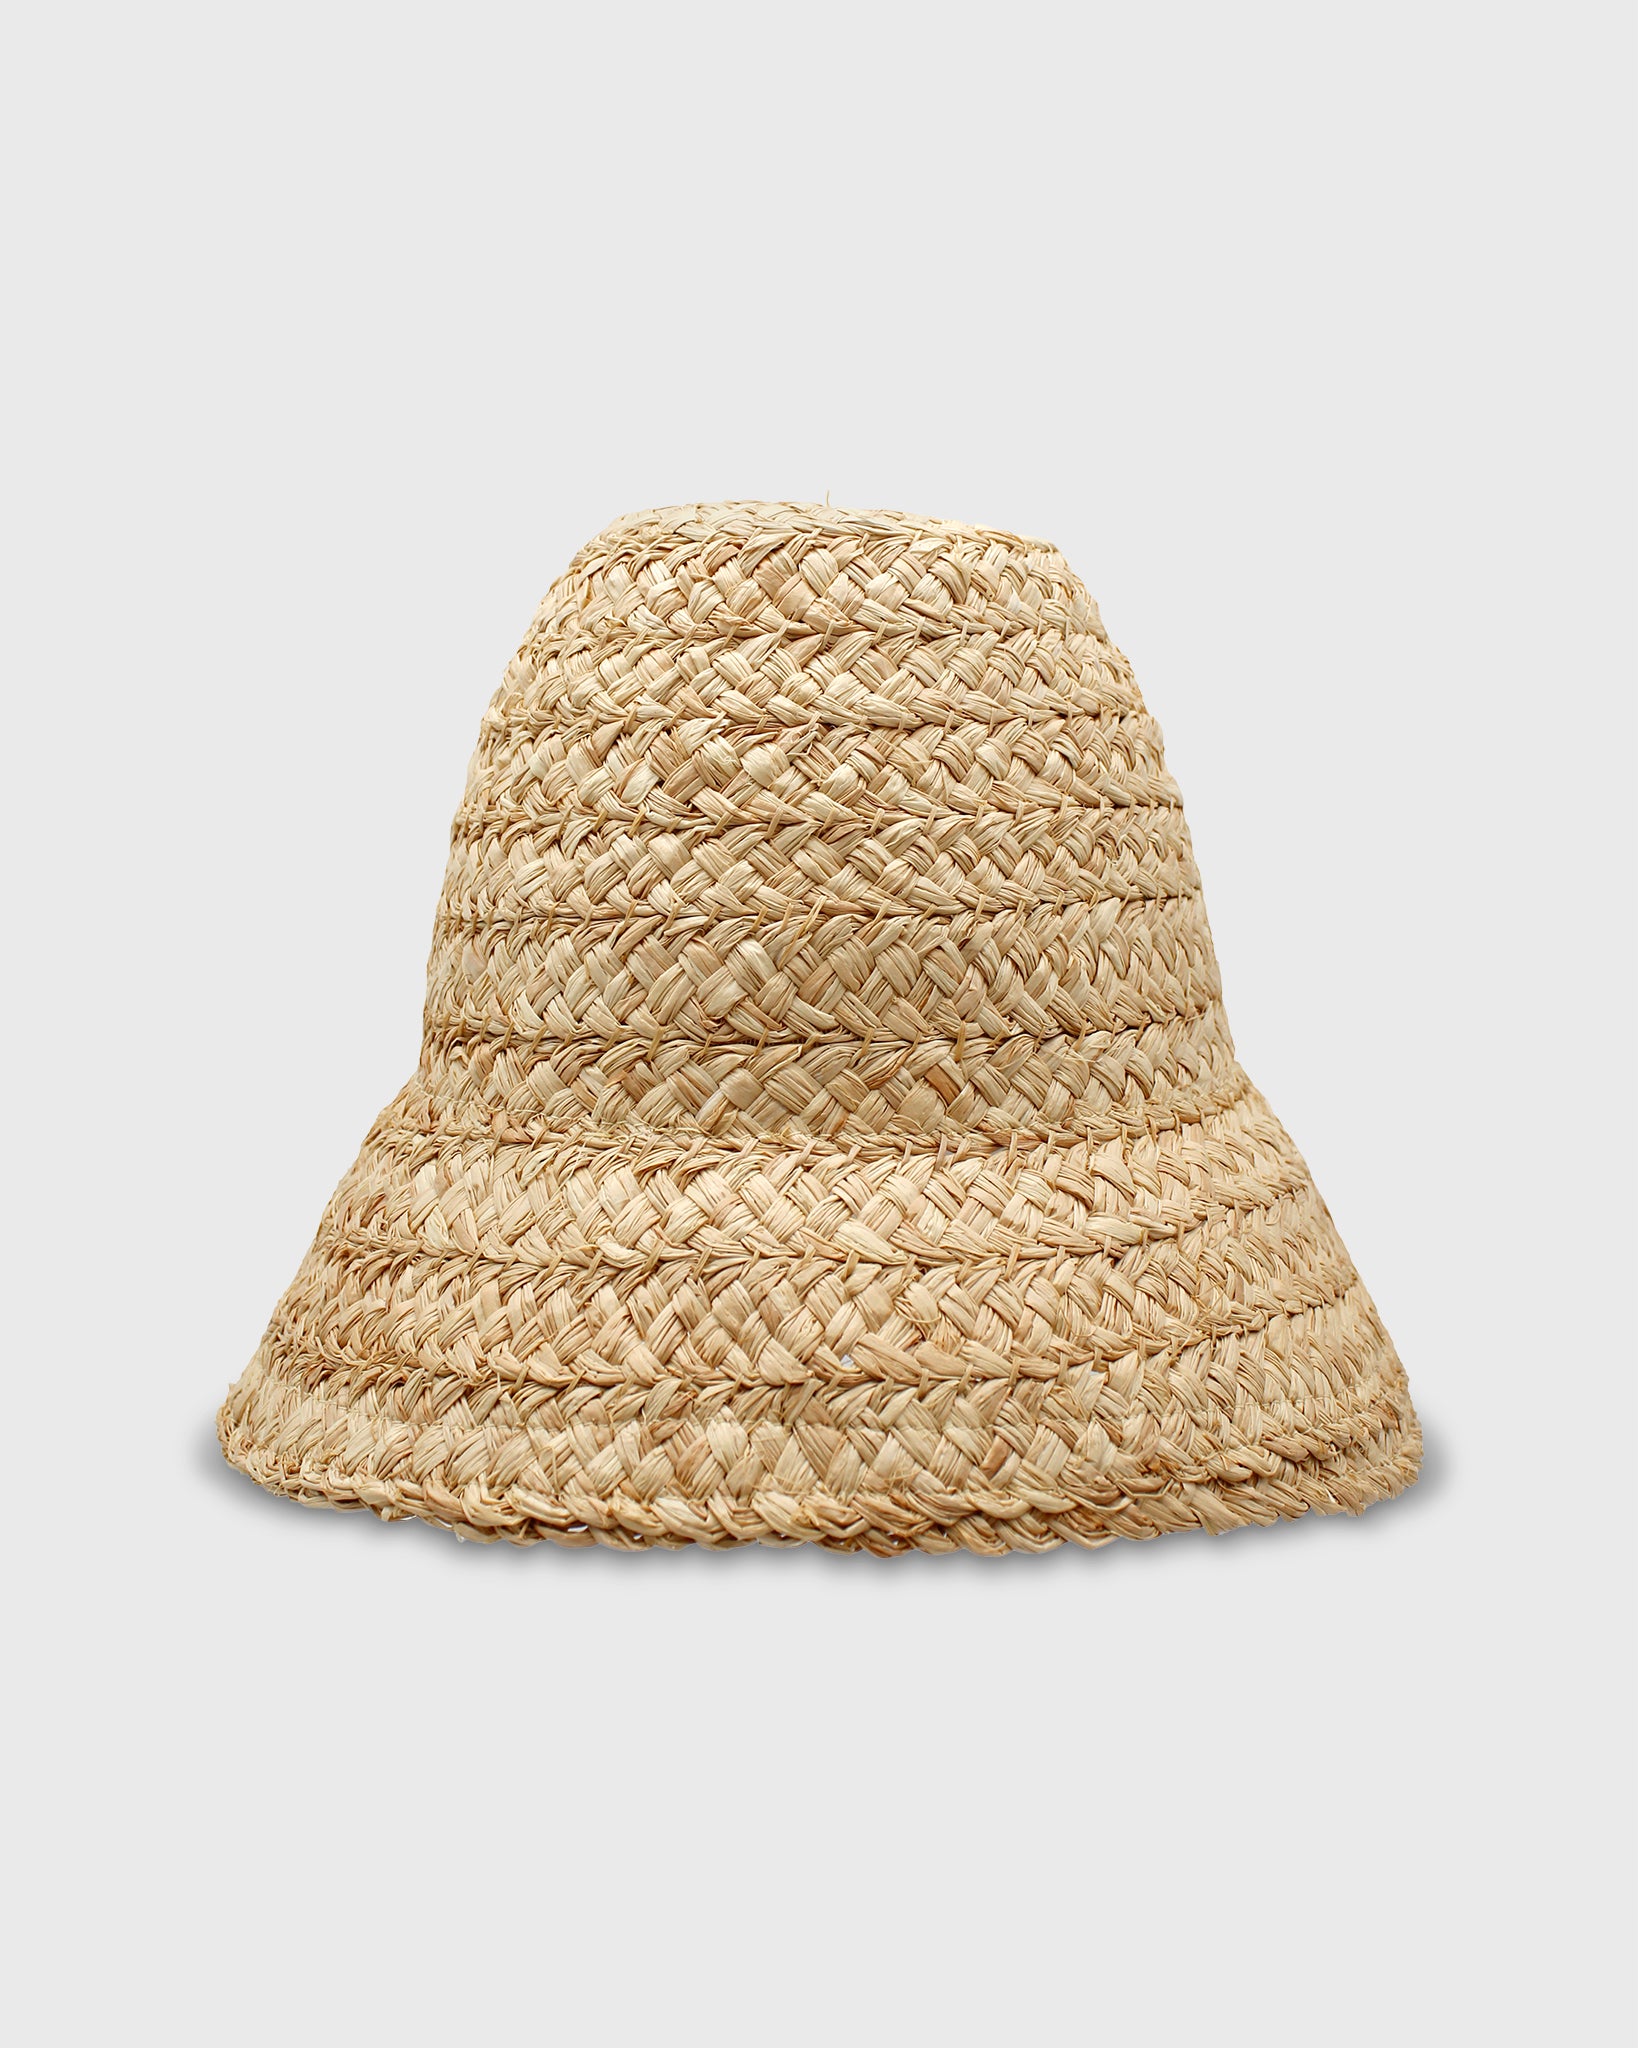 Petite Nap Hat in Natural